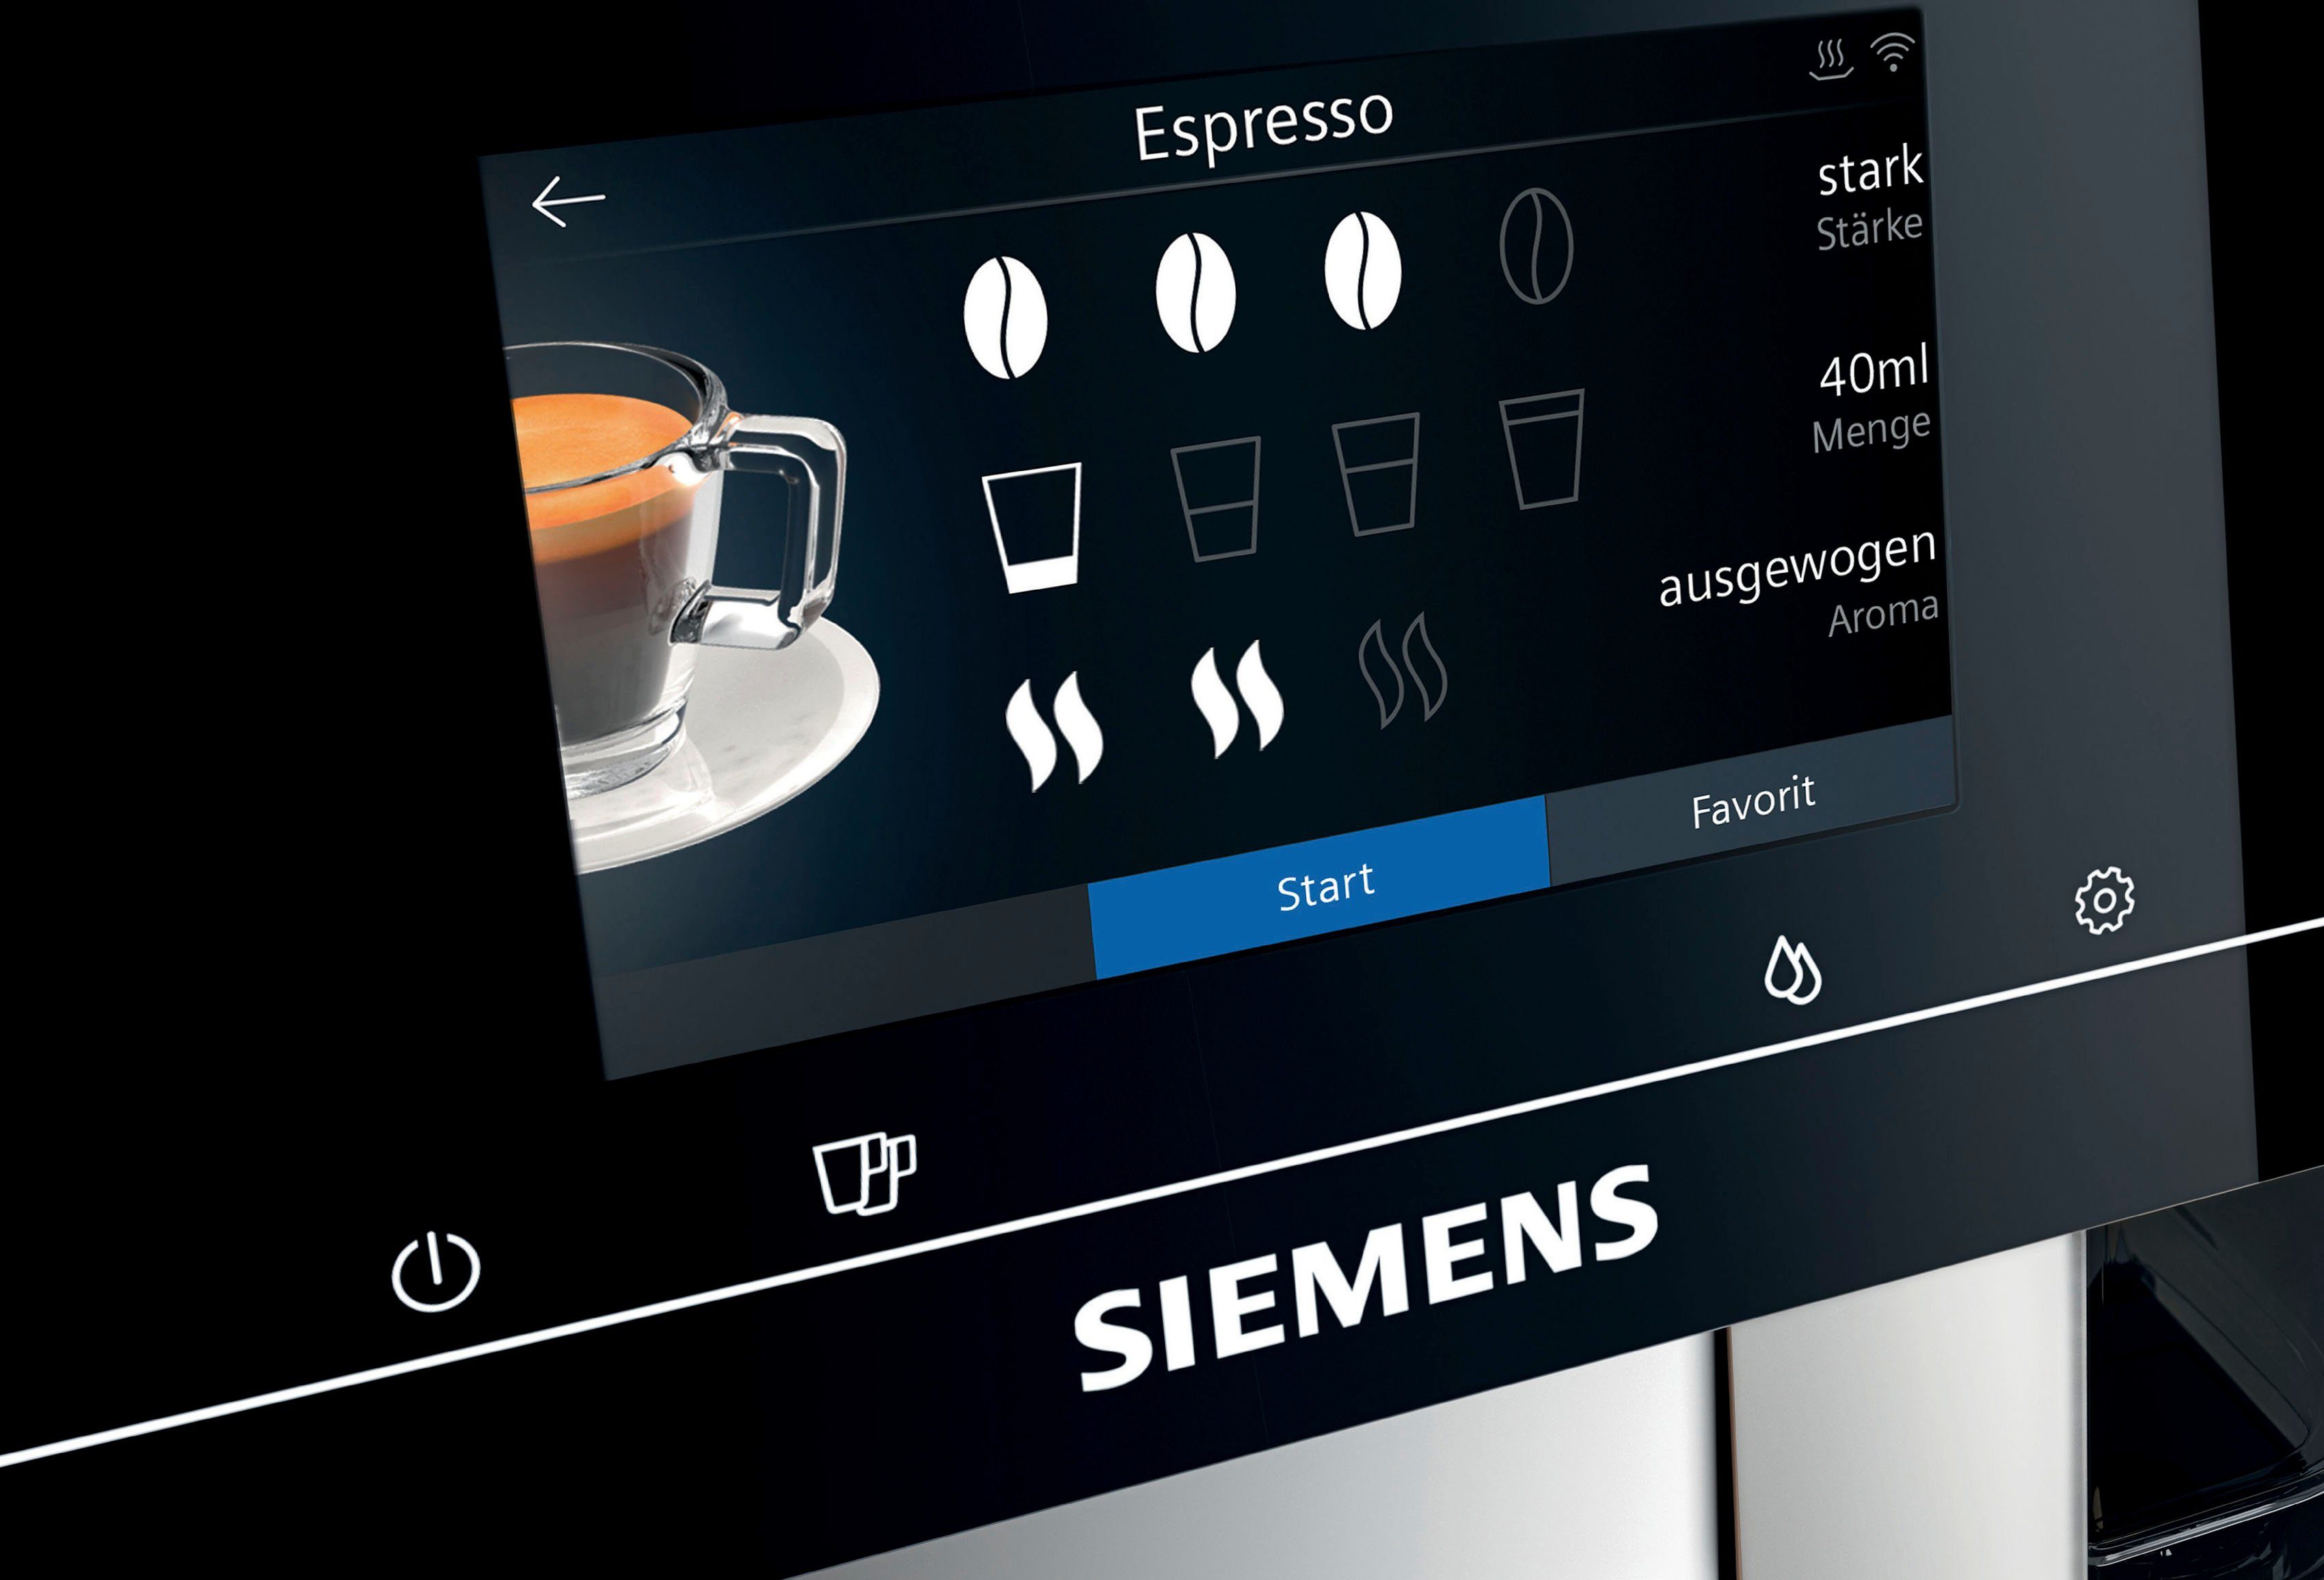 SIEMENS Kaffeevollautomat EQ.700 bis Milchsystem-Reinigung Inox 10 speicherbar, metallic Full-Touch-Display, TP705D47, silber Profile